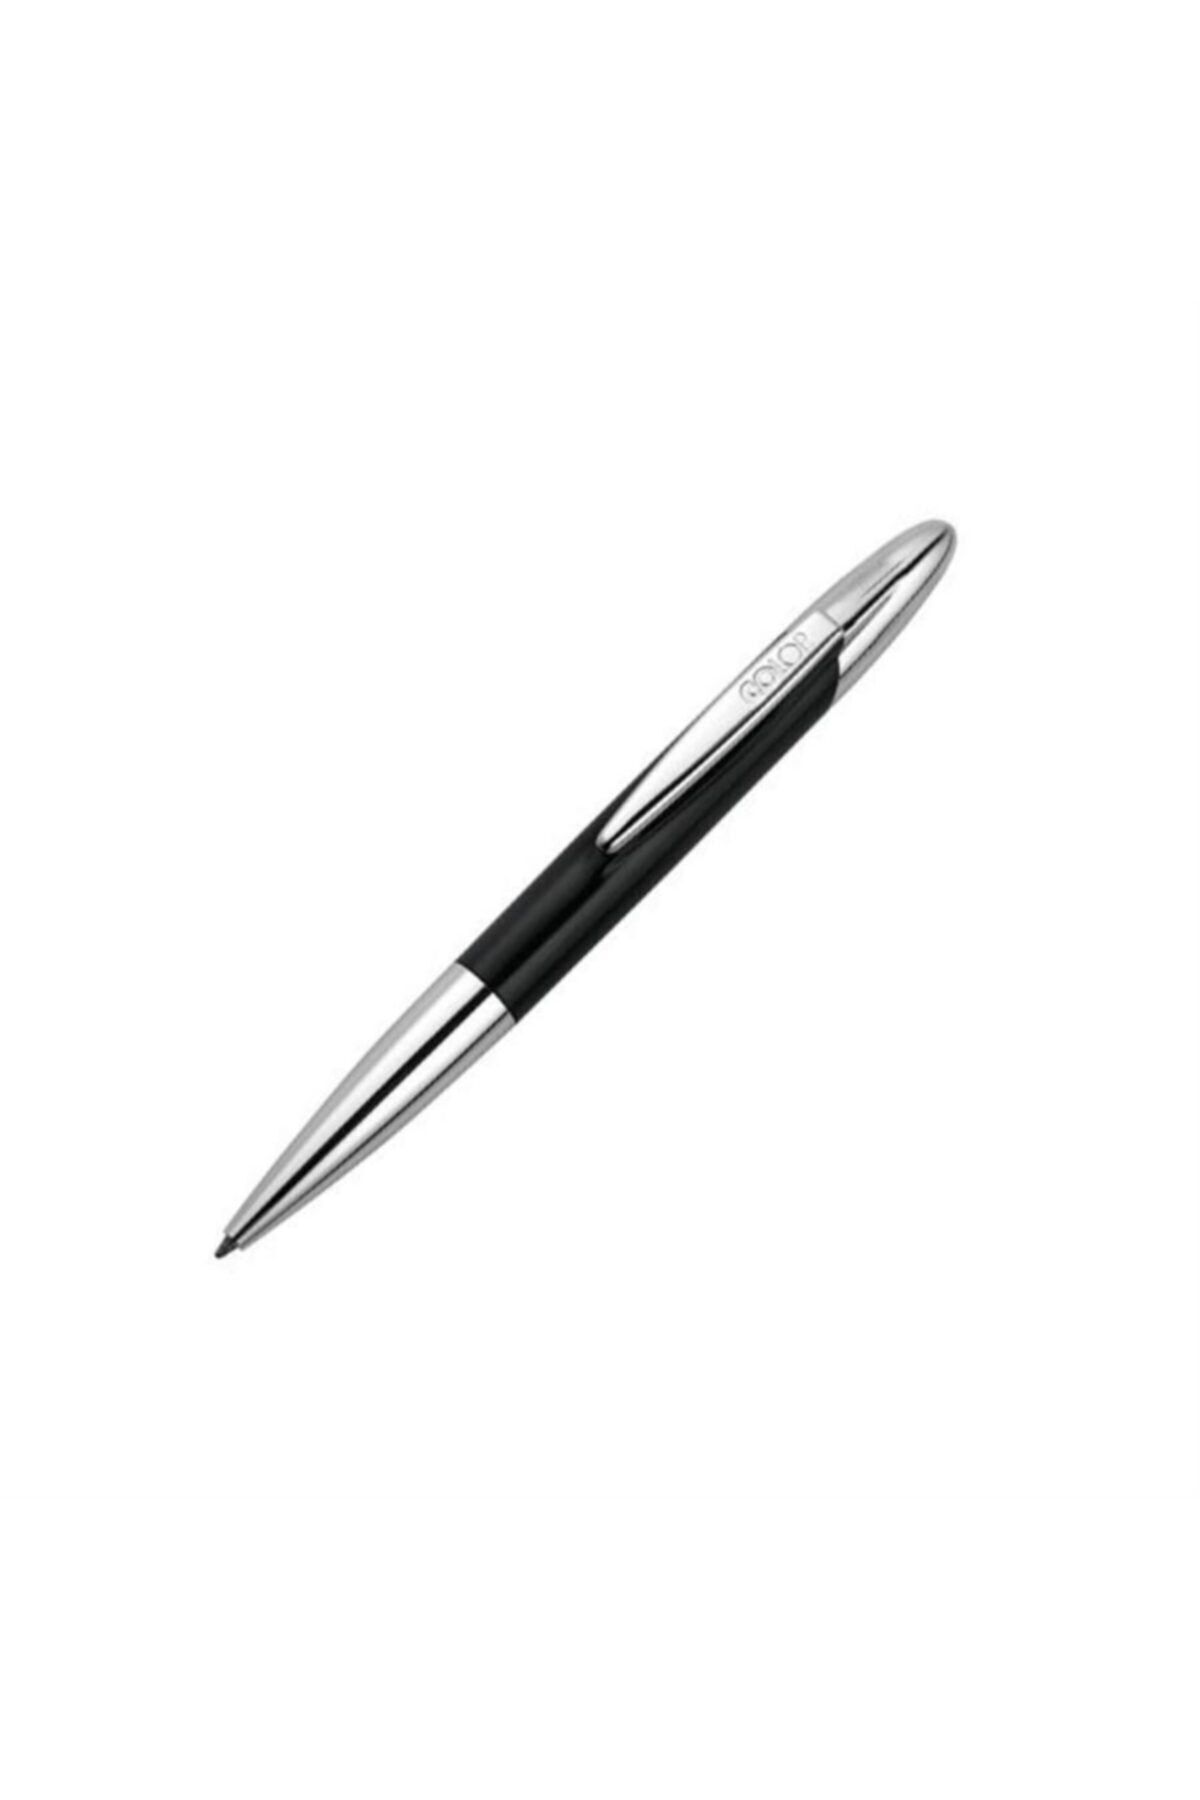 Colop Yeni Metal Kalem Kaşe Siyah-130185